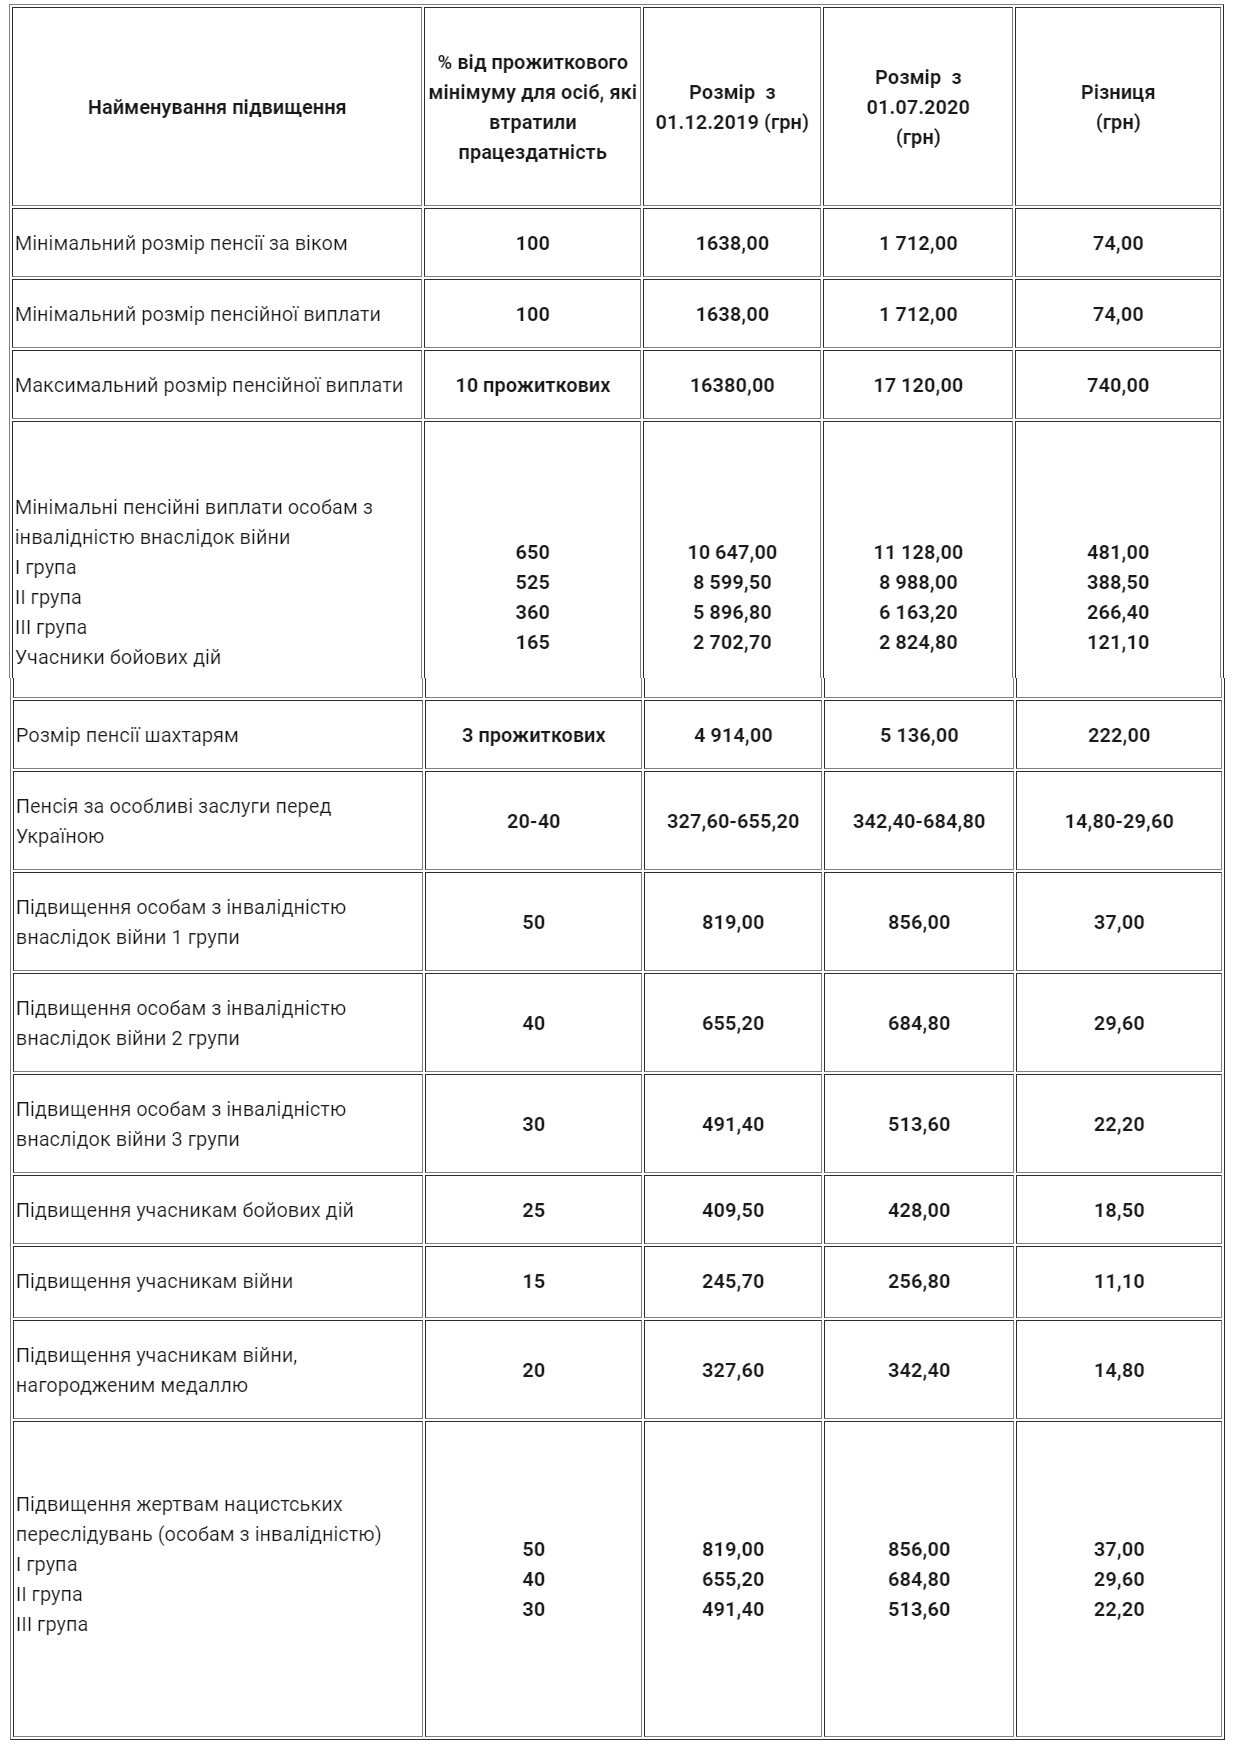 Пенсіонерам в Україні знову підвищили виплати: надбавки отримає ряд категорій